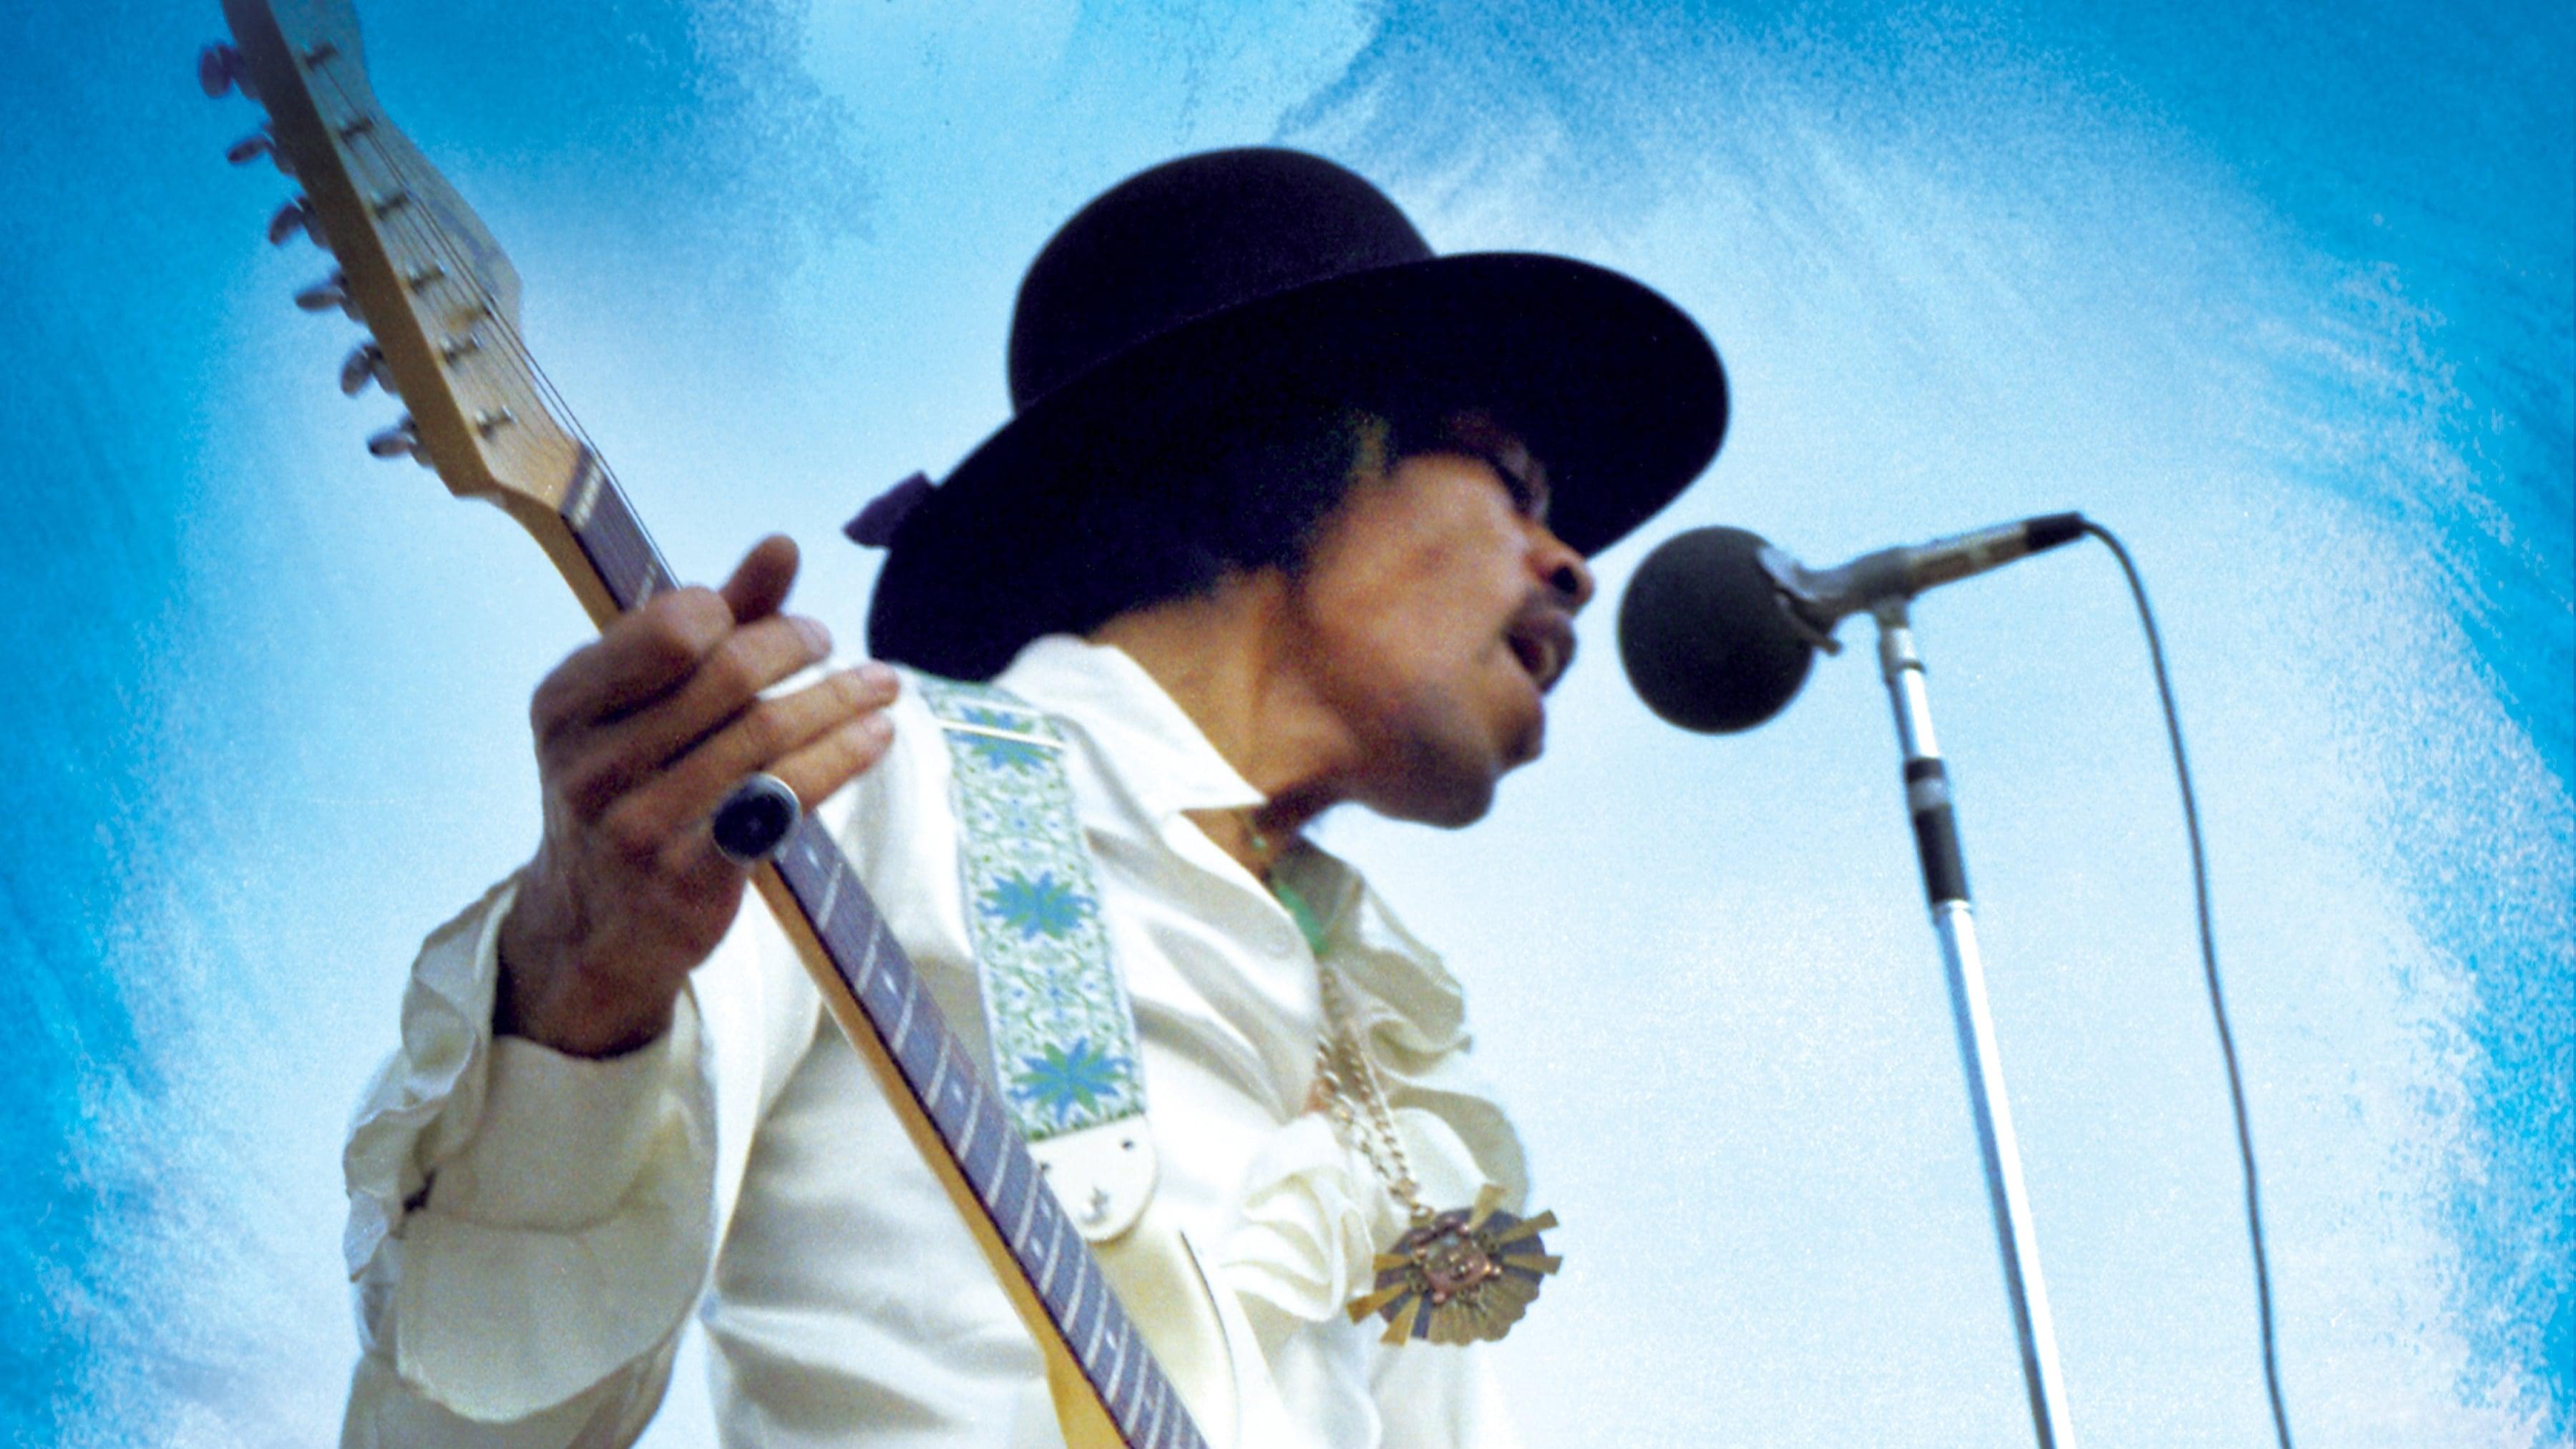 Bob Hendrix backdrop